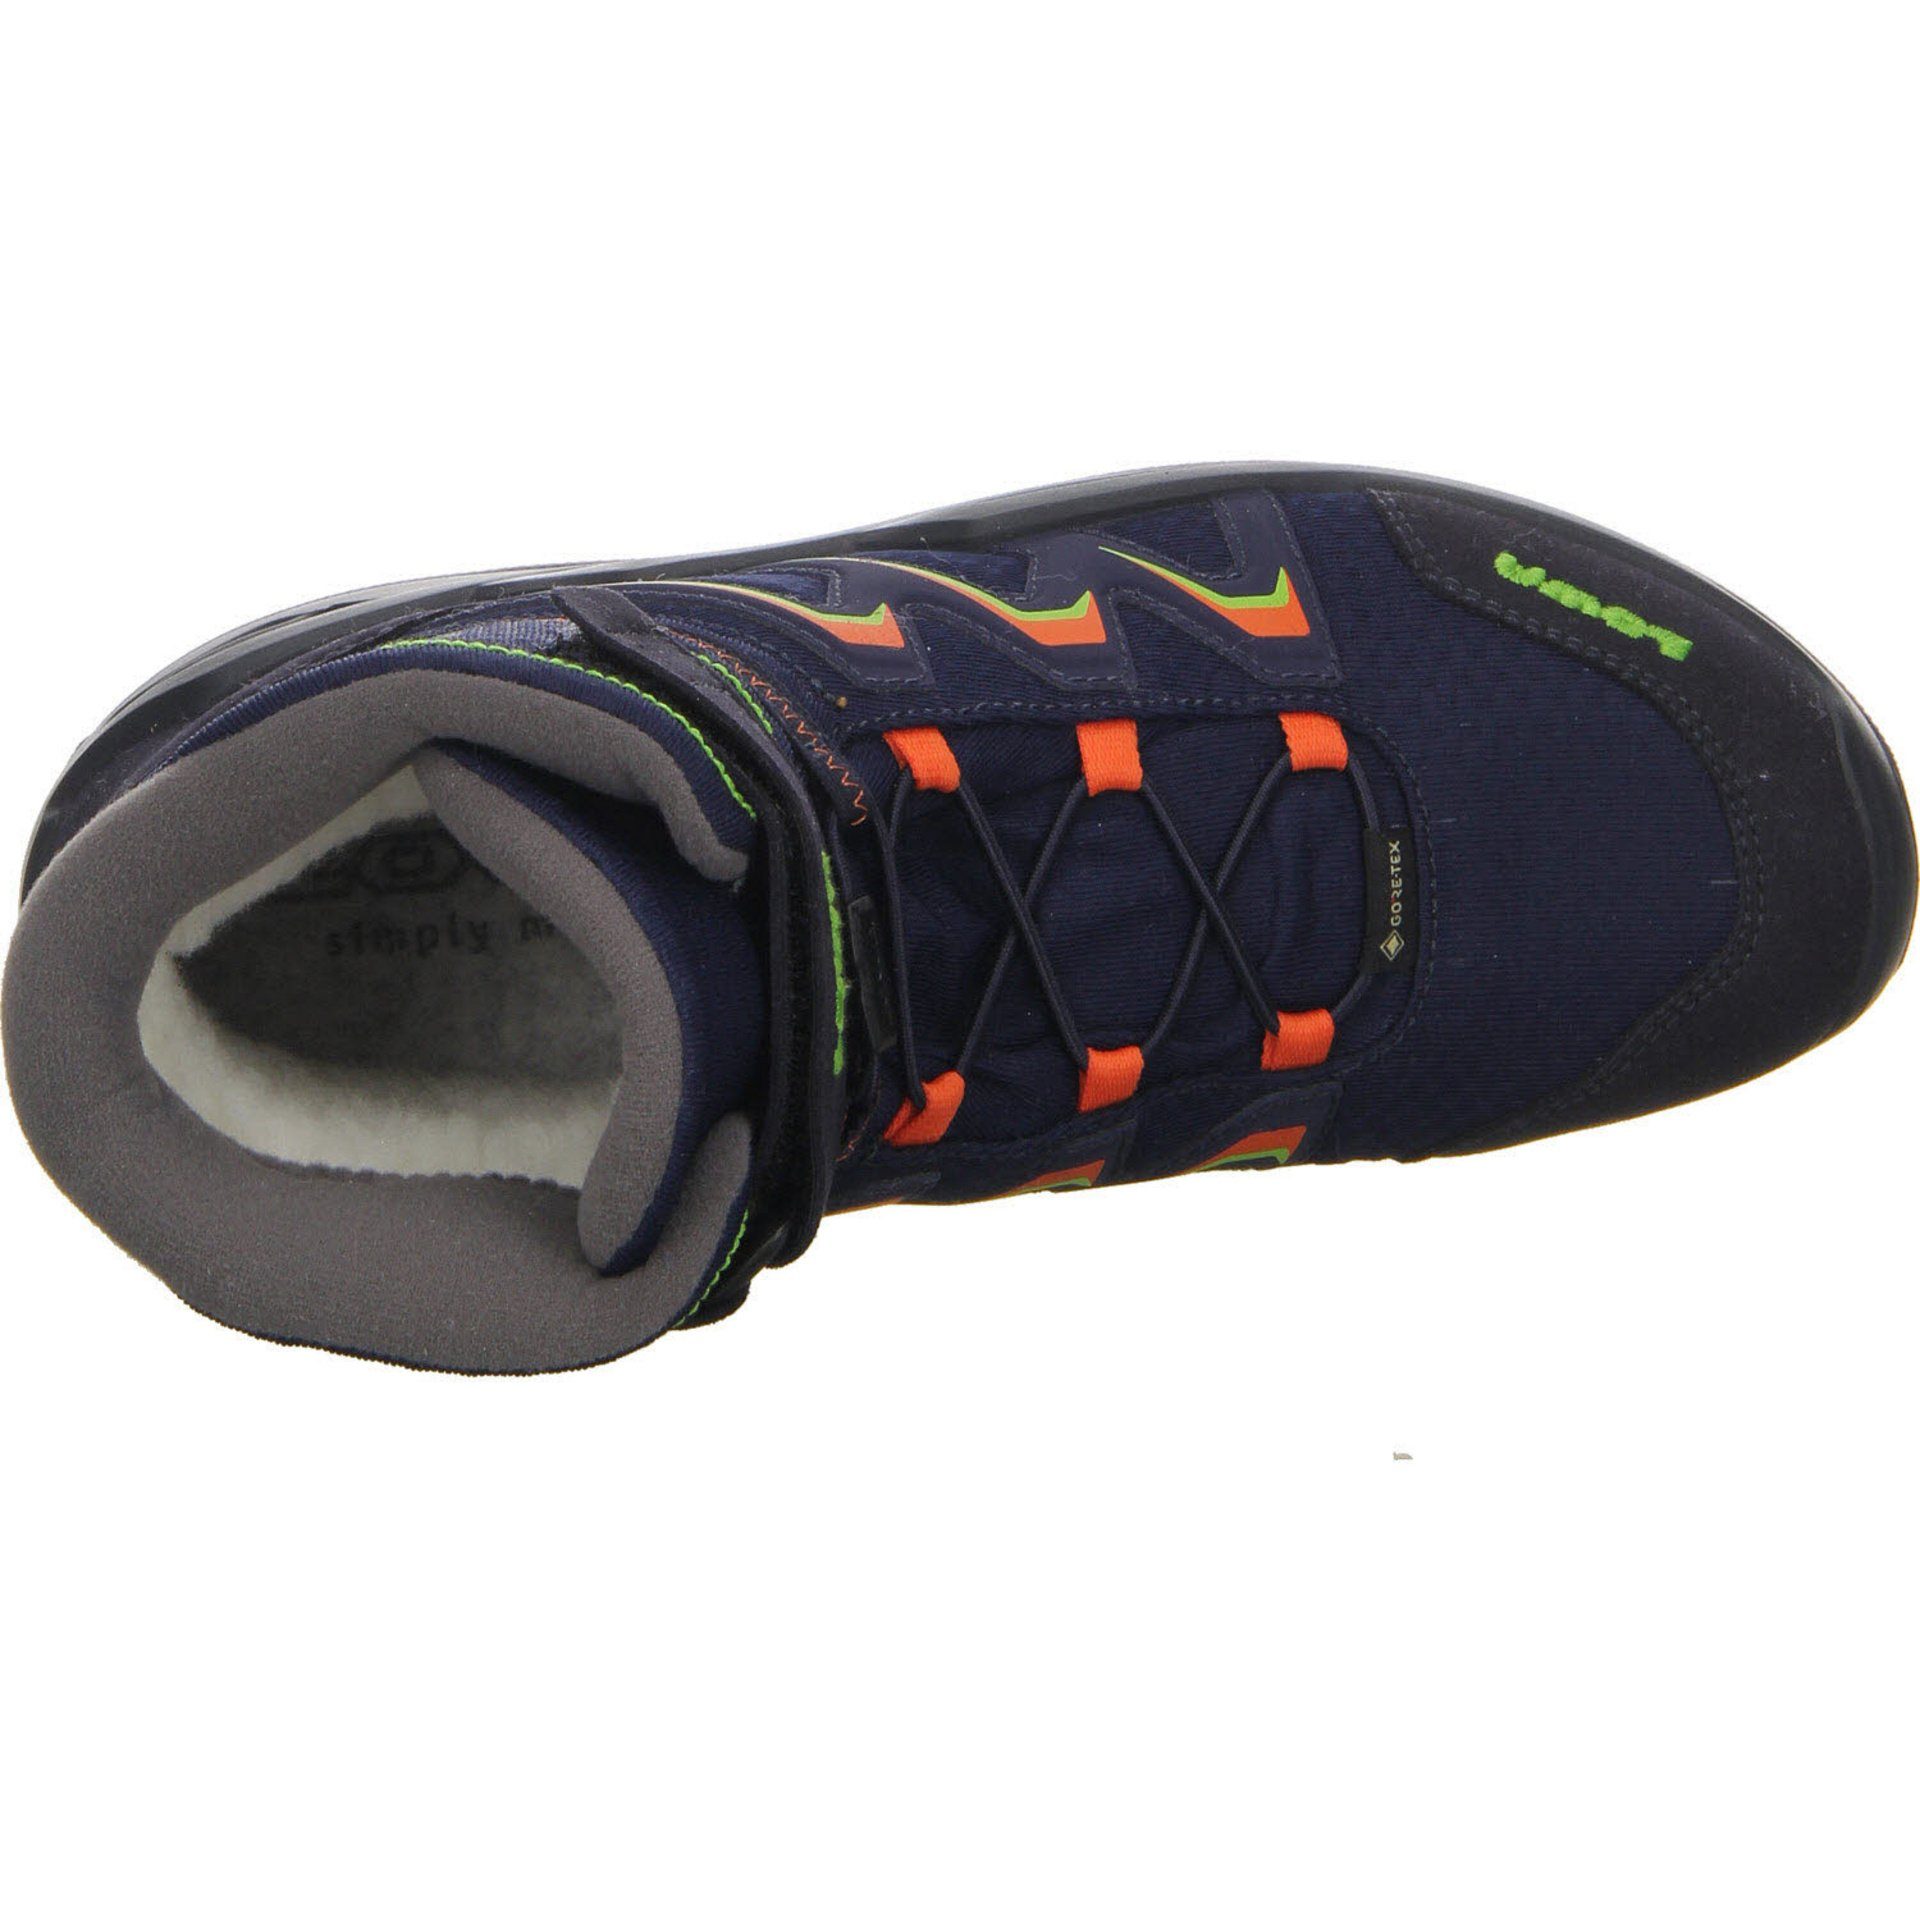 Jungen Textil Stiefel Stiefel Lowa Maddox navy/orange Schuhe GTX Warm Boots